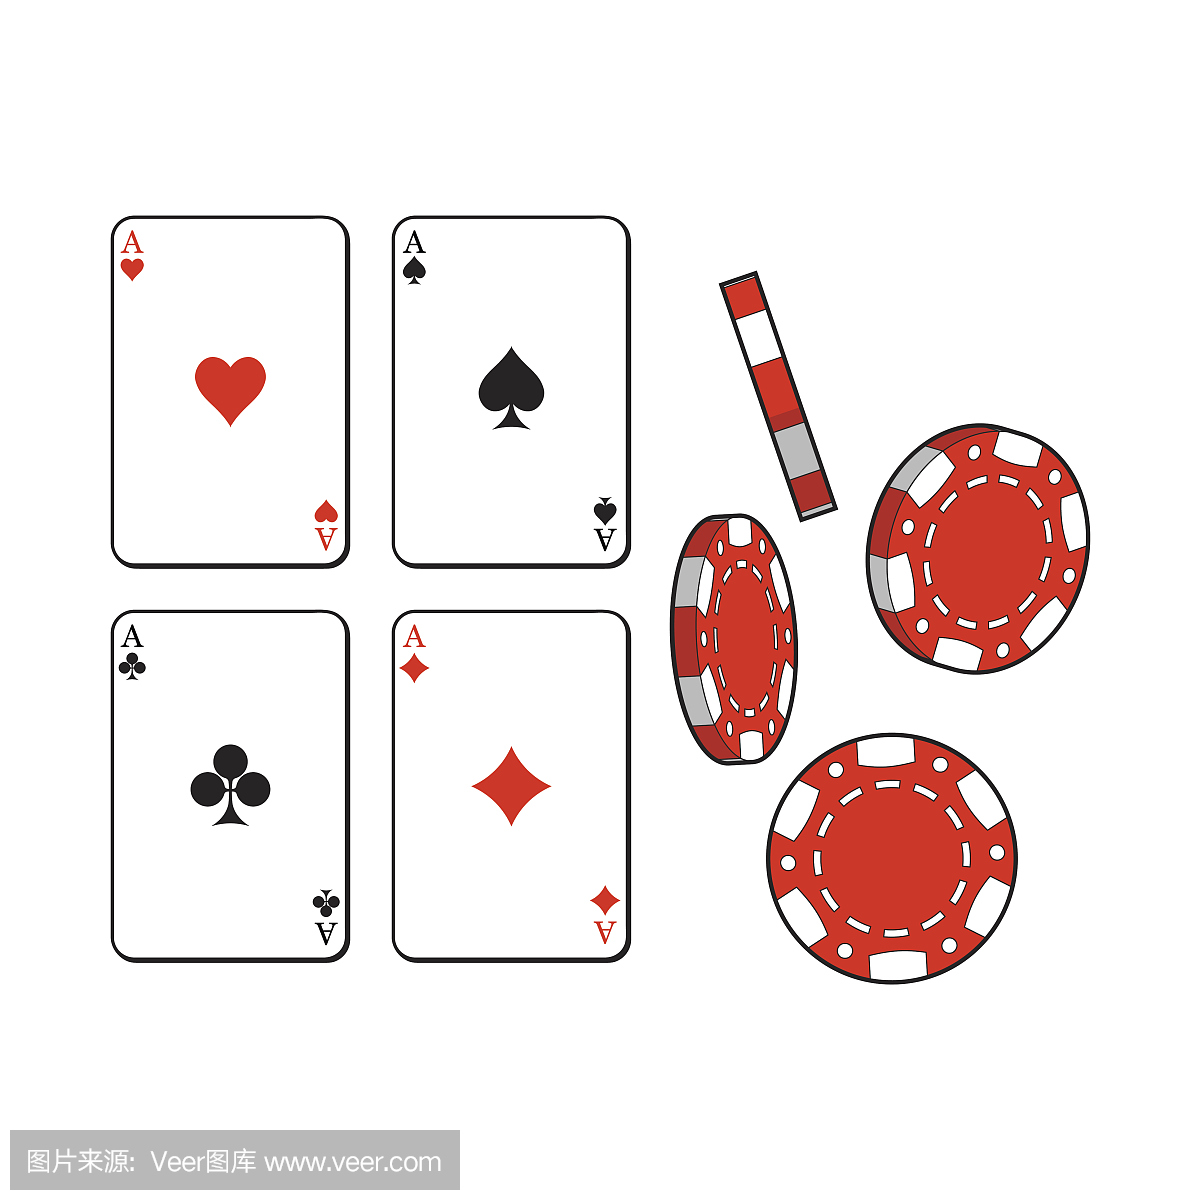 心,铁锹,俱乐部,钻石王牌扑克牌和赌博筹码